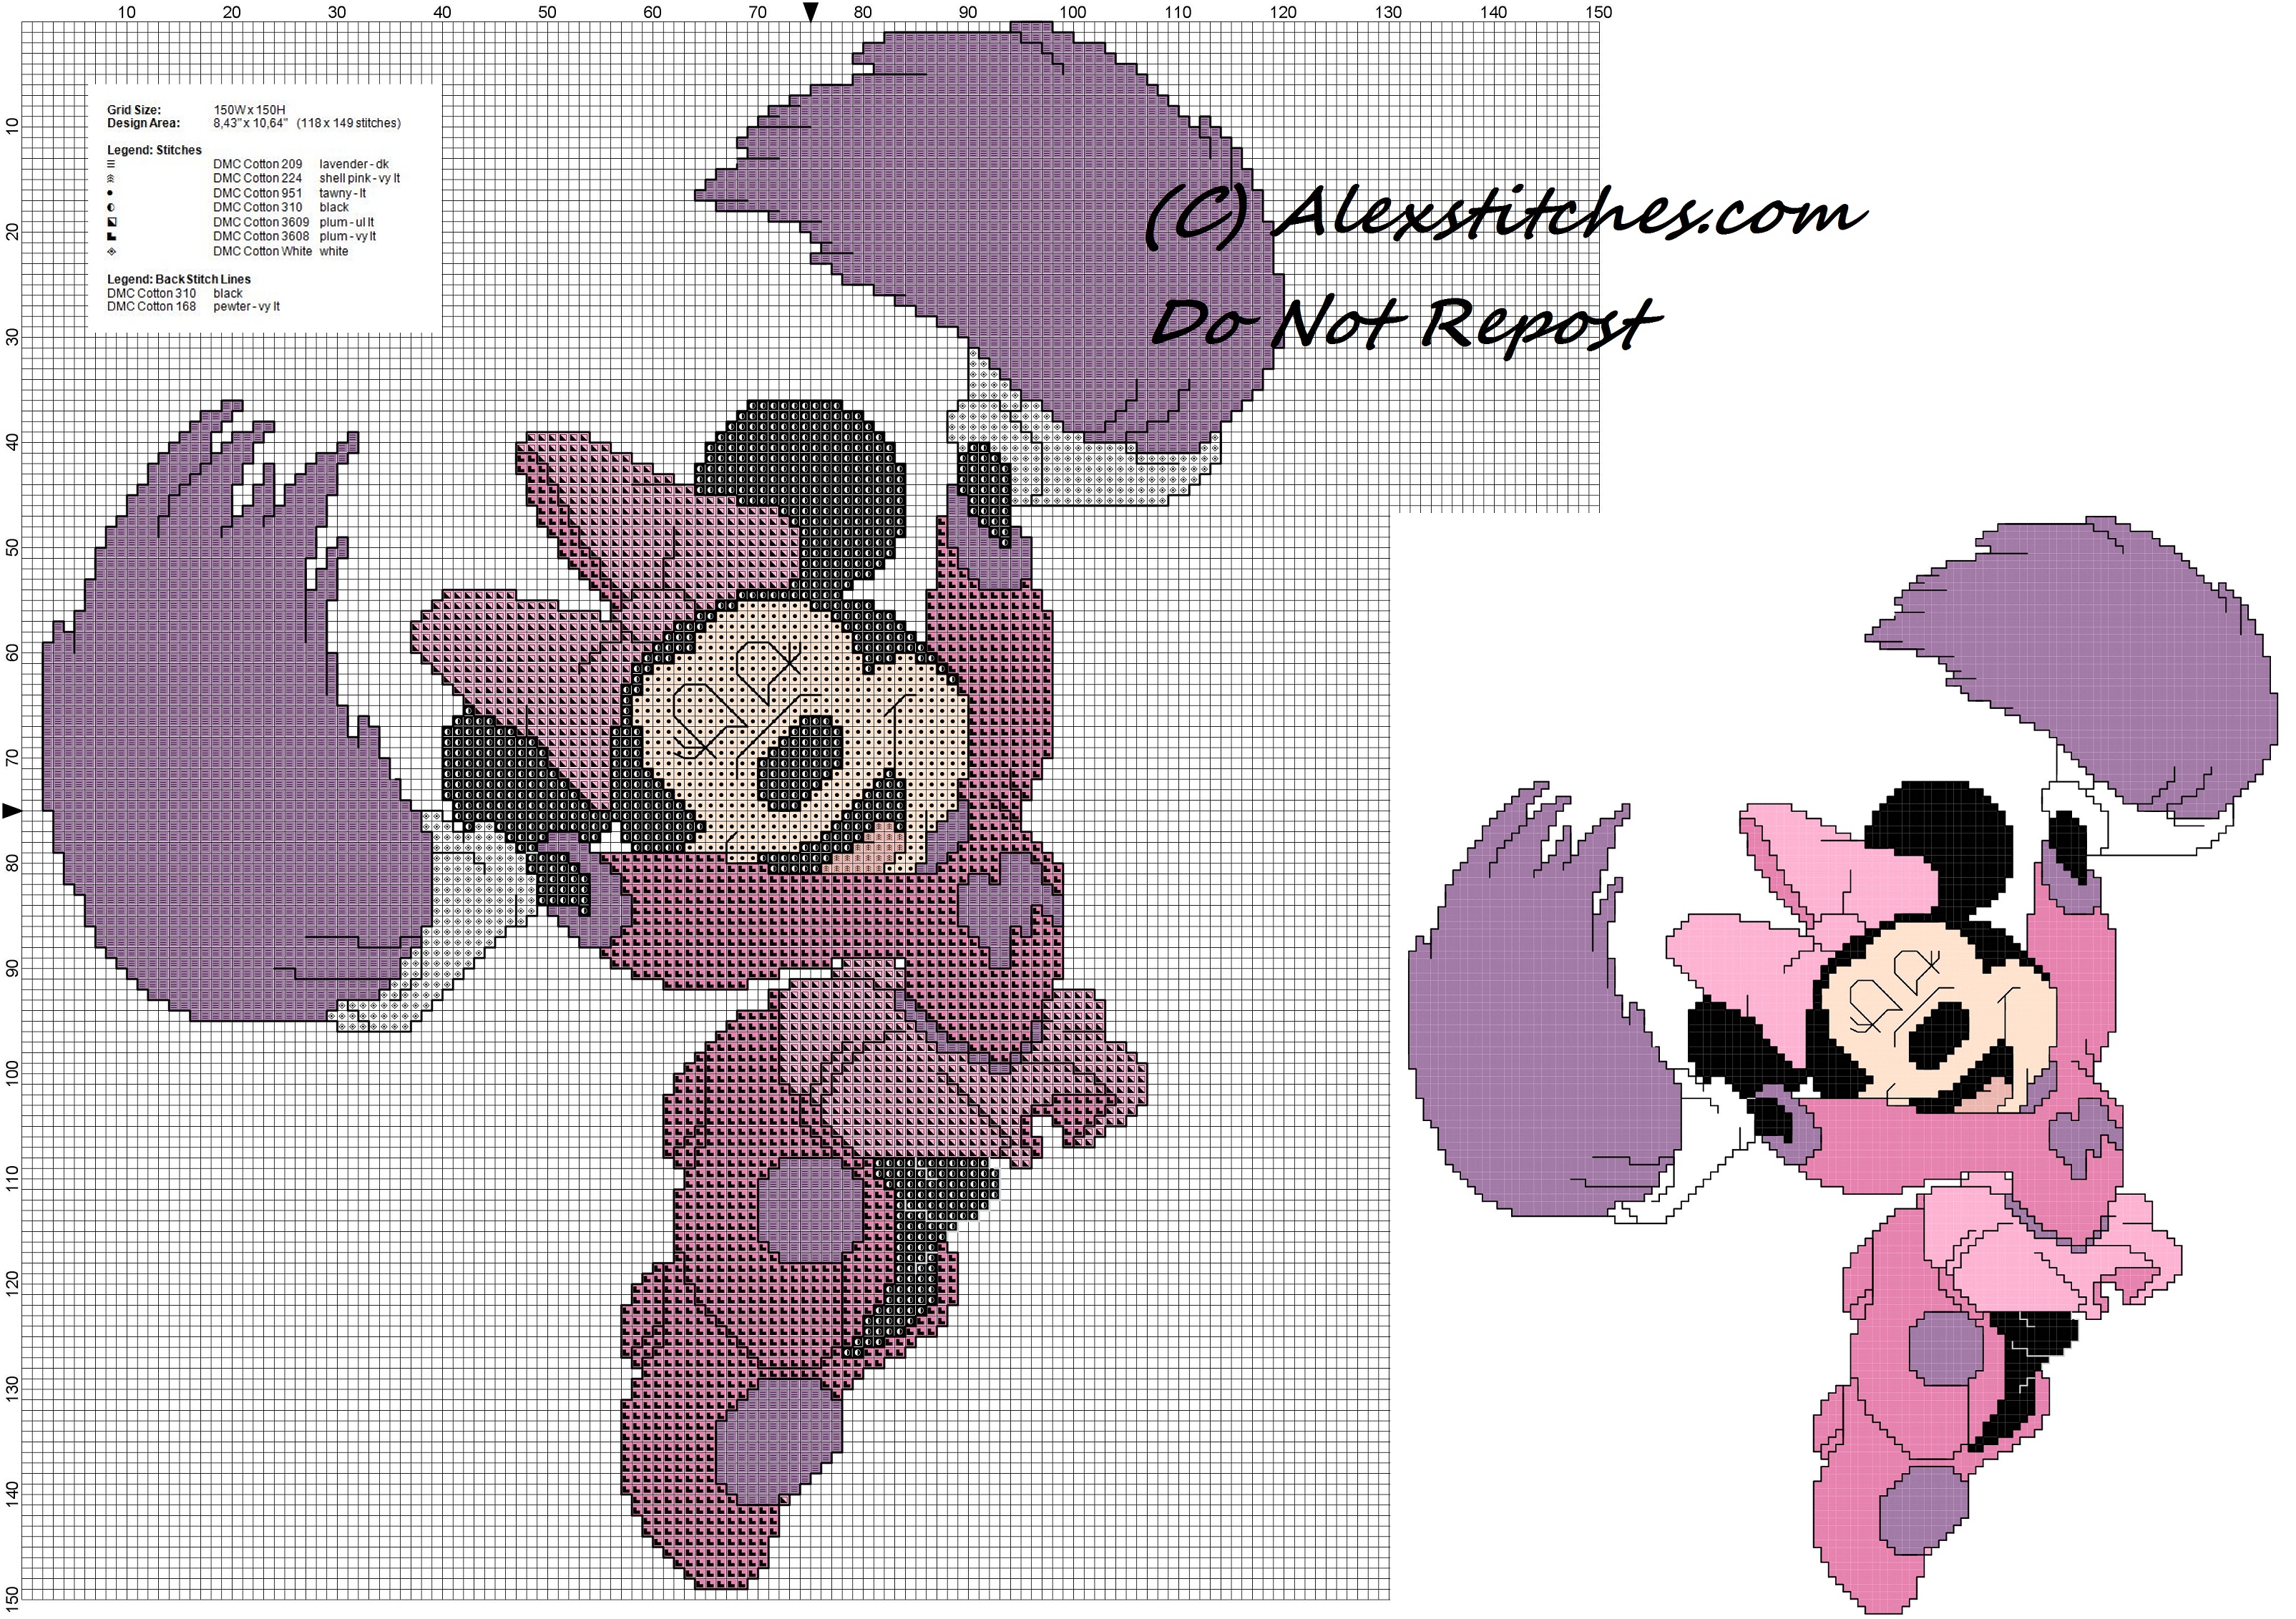 Minnie mouse cheerleader cross stitch pattern